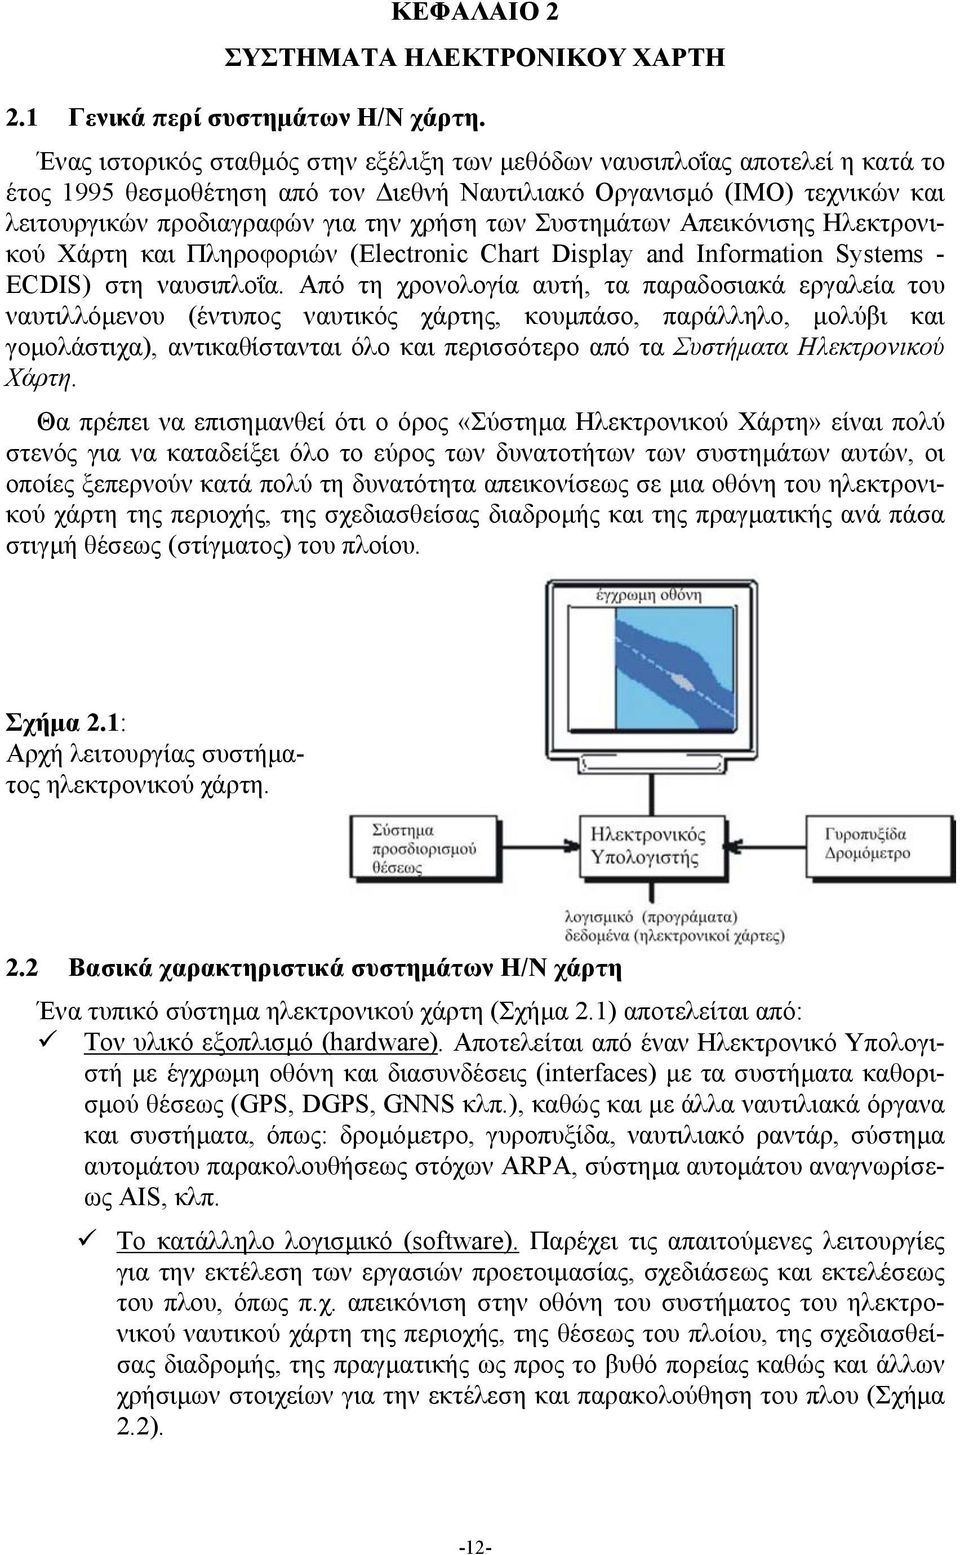 Συστημάτων Απεικόνισης Ηλεκτρονικού Χάρτη και Πληροφοριών (Electronic Chart Display and Information Systems - ECDIS) στη ναυσιπλοΐα.